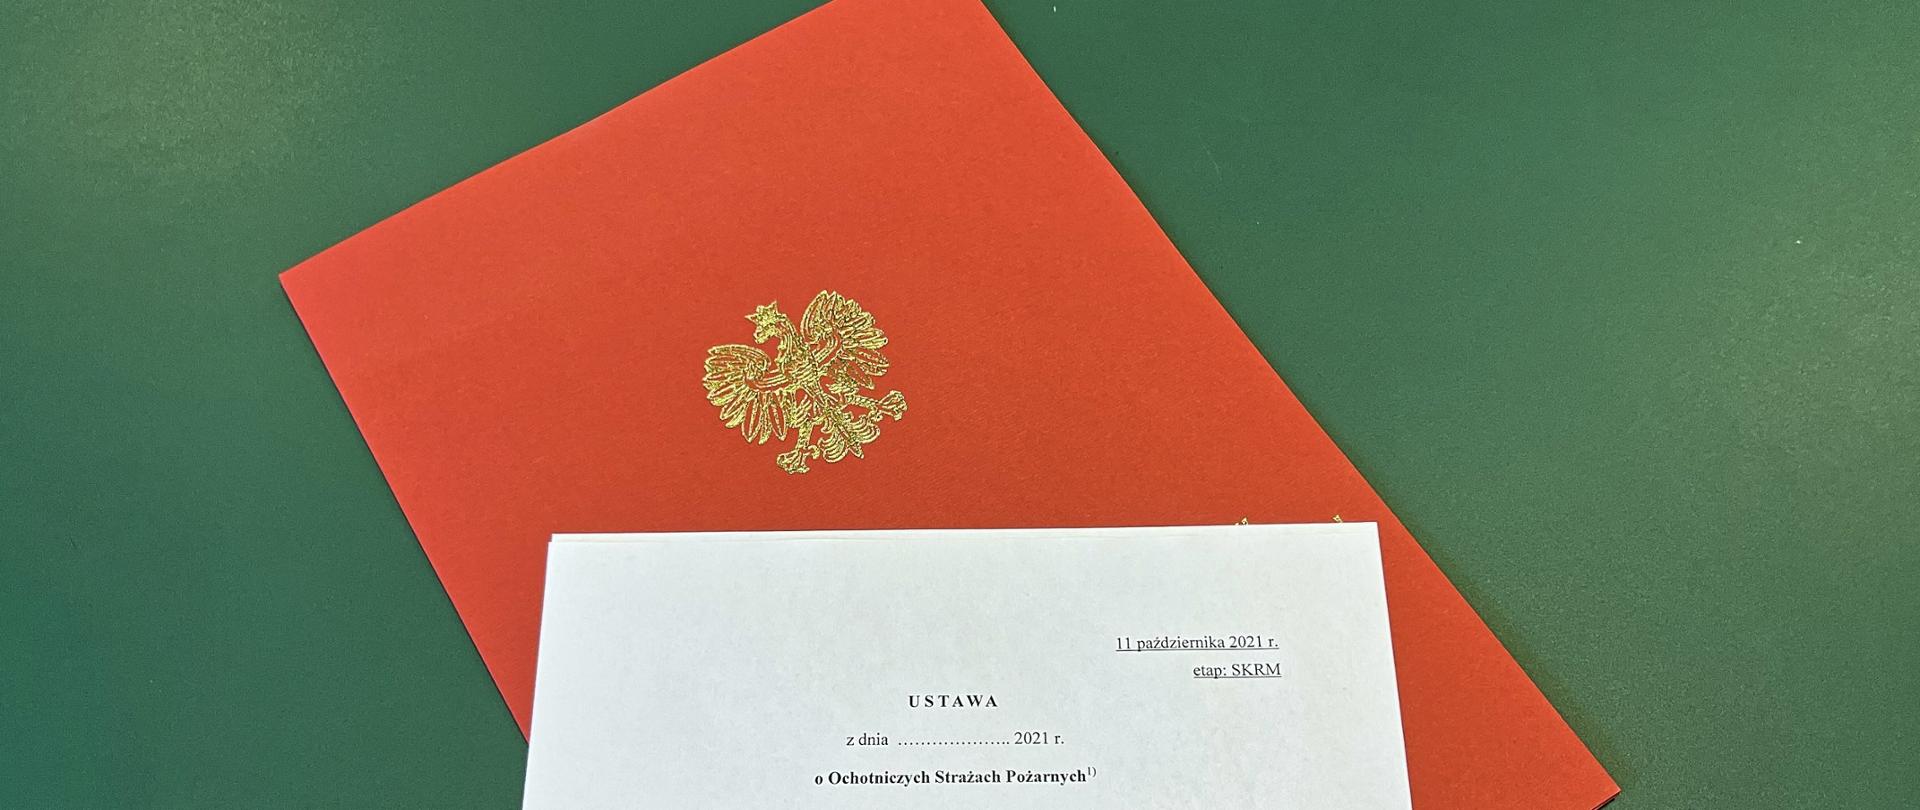 Biała kartka z tytułem dokumentu ułożona na czerwonej teczce papierowej z orłem, pod spodem zielone tło